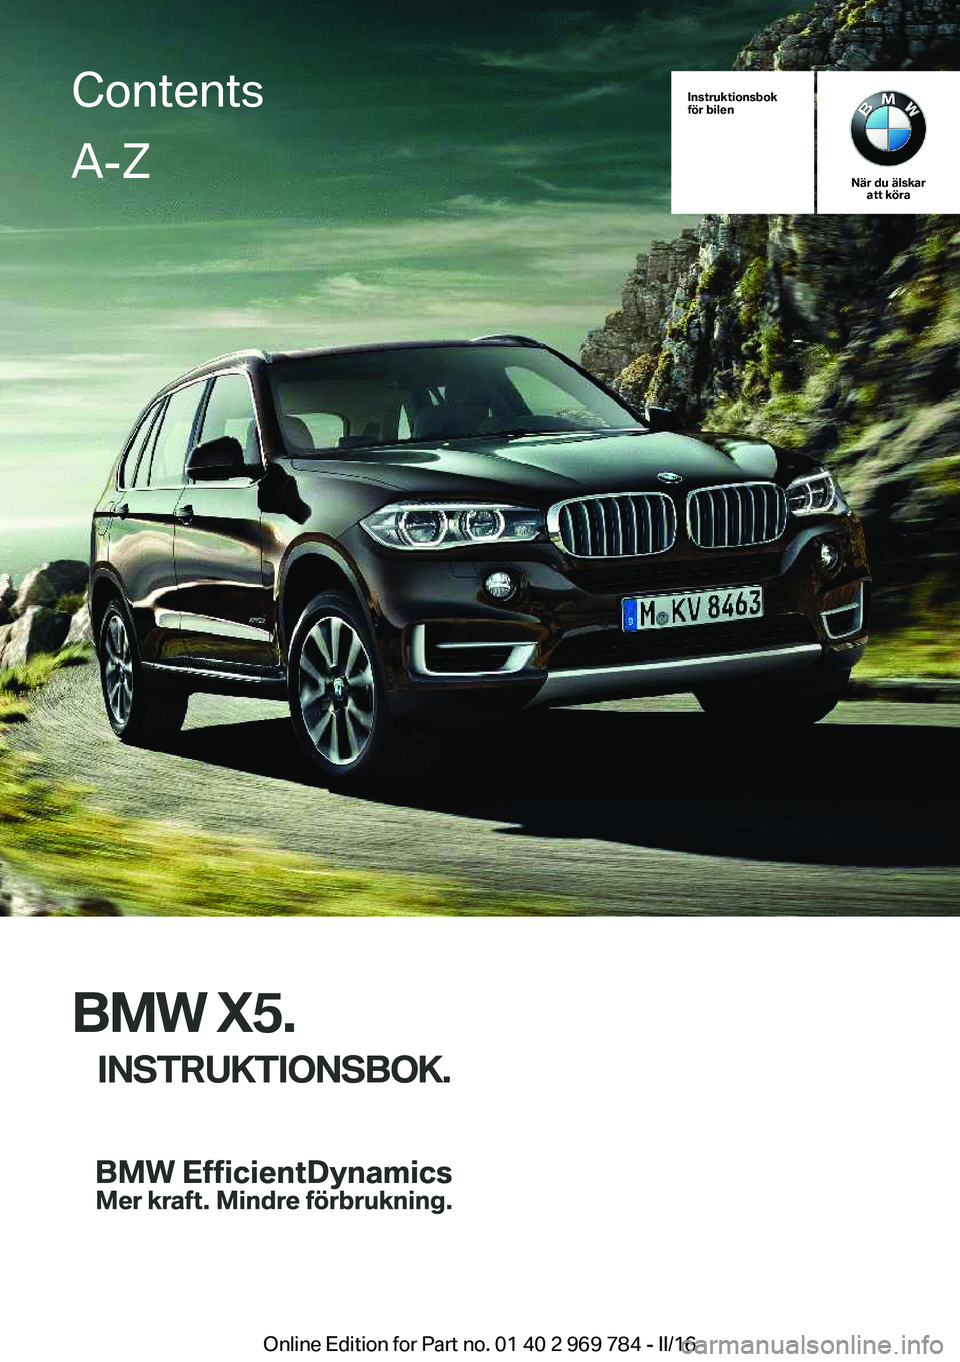 BMW X5 2016  InstruktionsbÖcker (in Swedish) Instruktionsbok
för bilen
När du älskar att köra
BMW X5.
INSTRUKTIONSBOK.
ContentsA-Z
Online Edition for Part no. 01 40 2 969 784 - II/16   